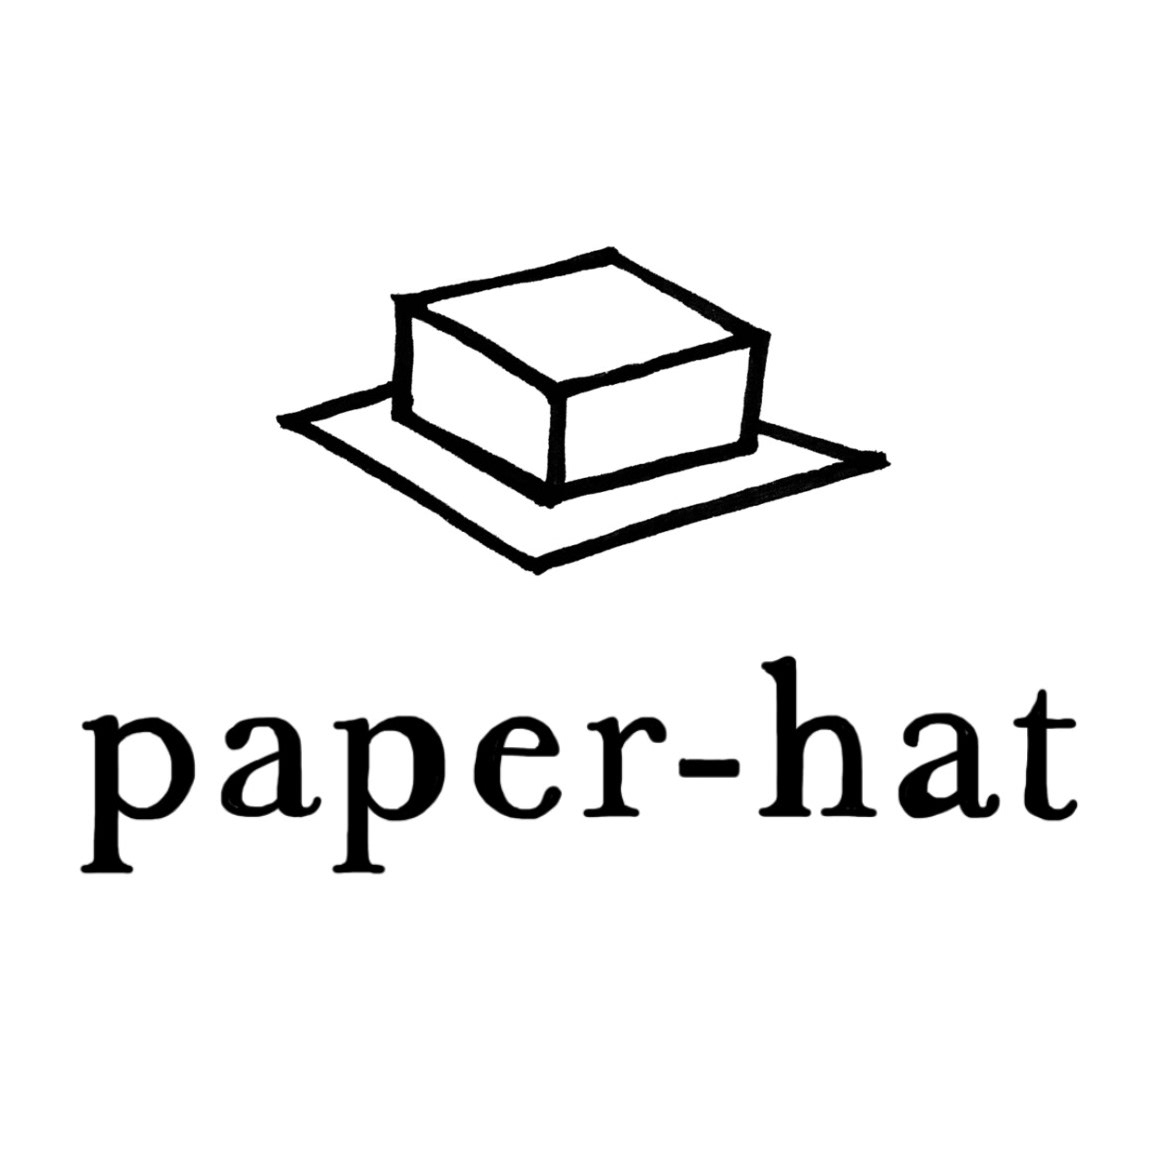 paper-hat